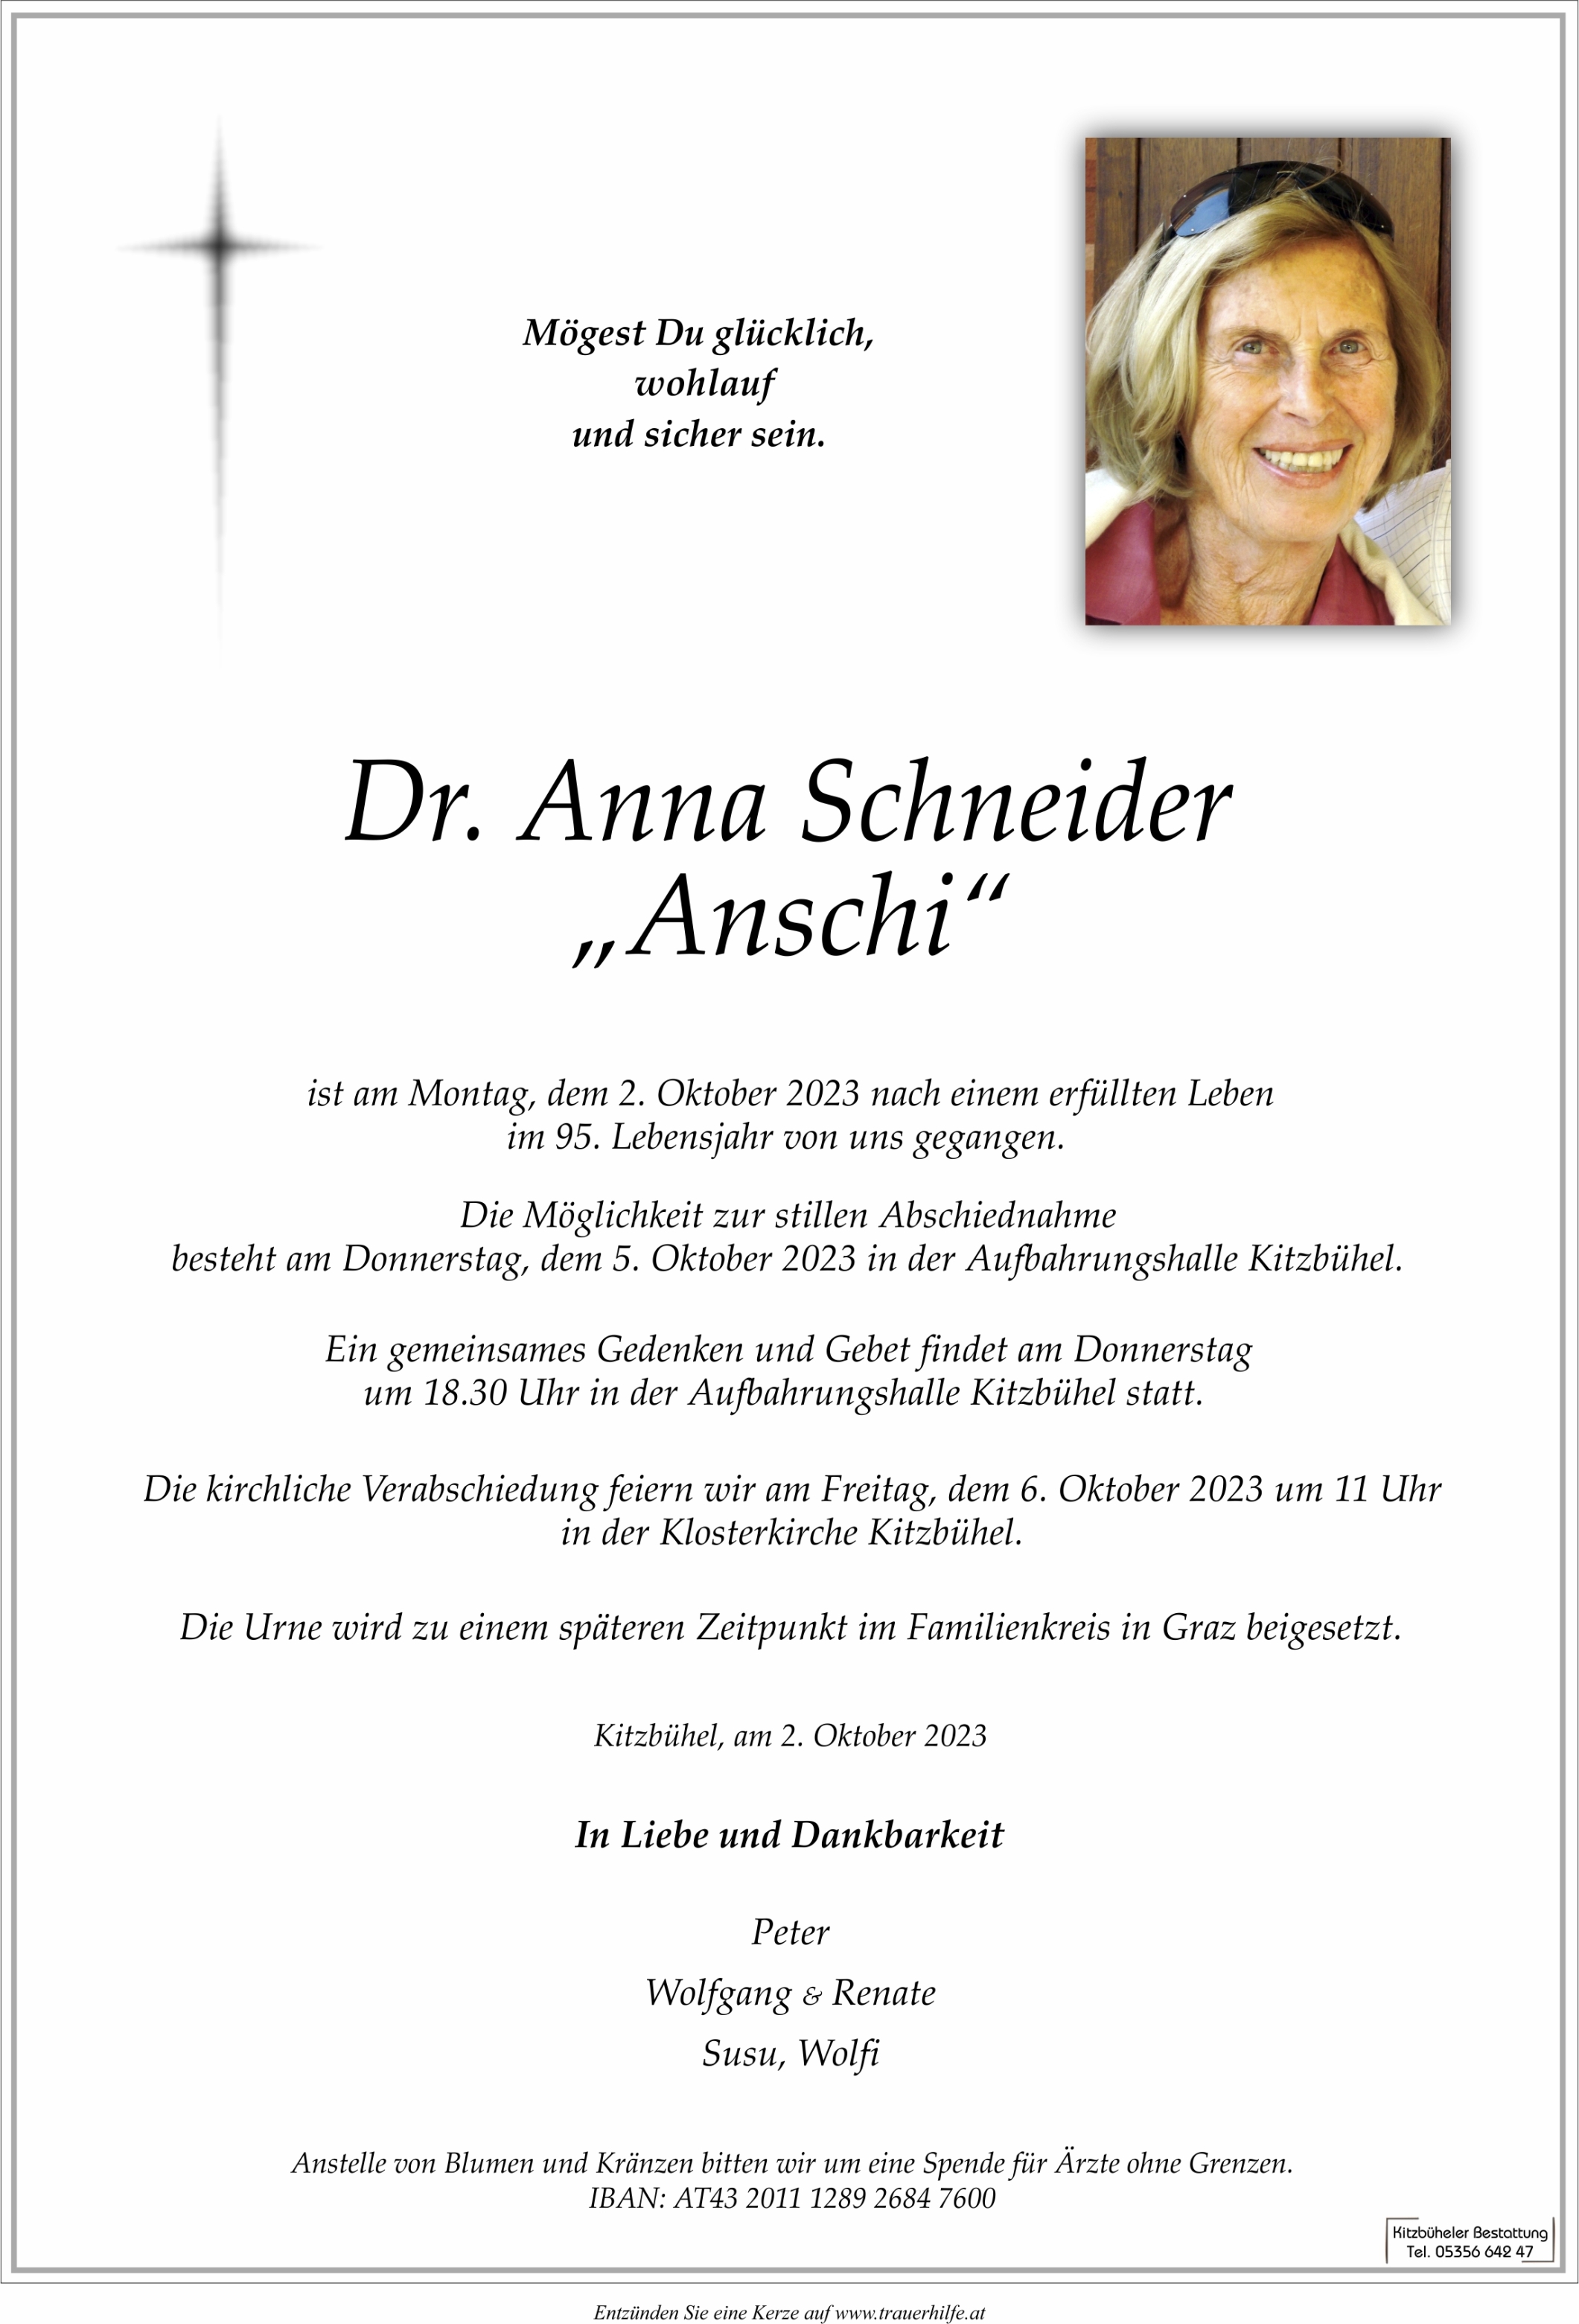 Anna "Anschi" Schneider